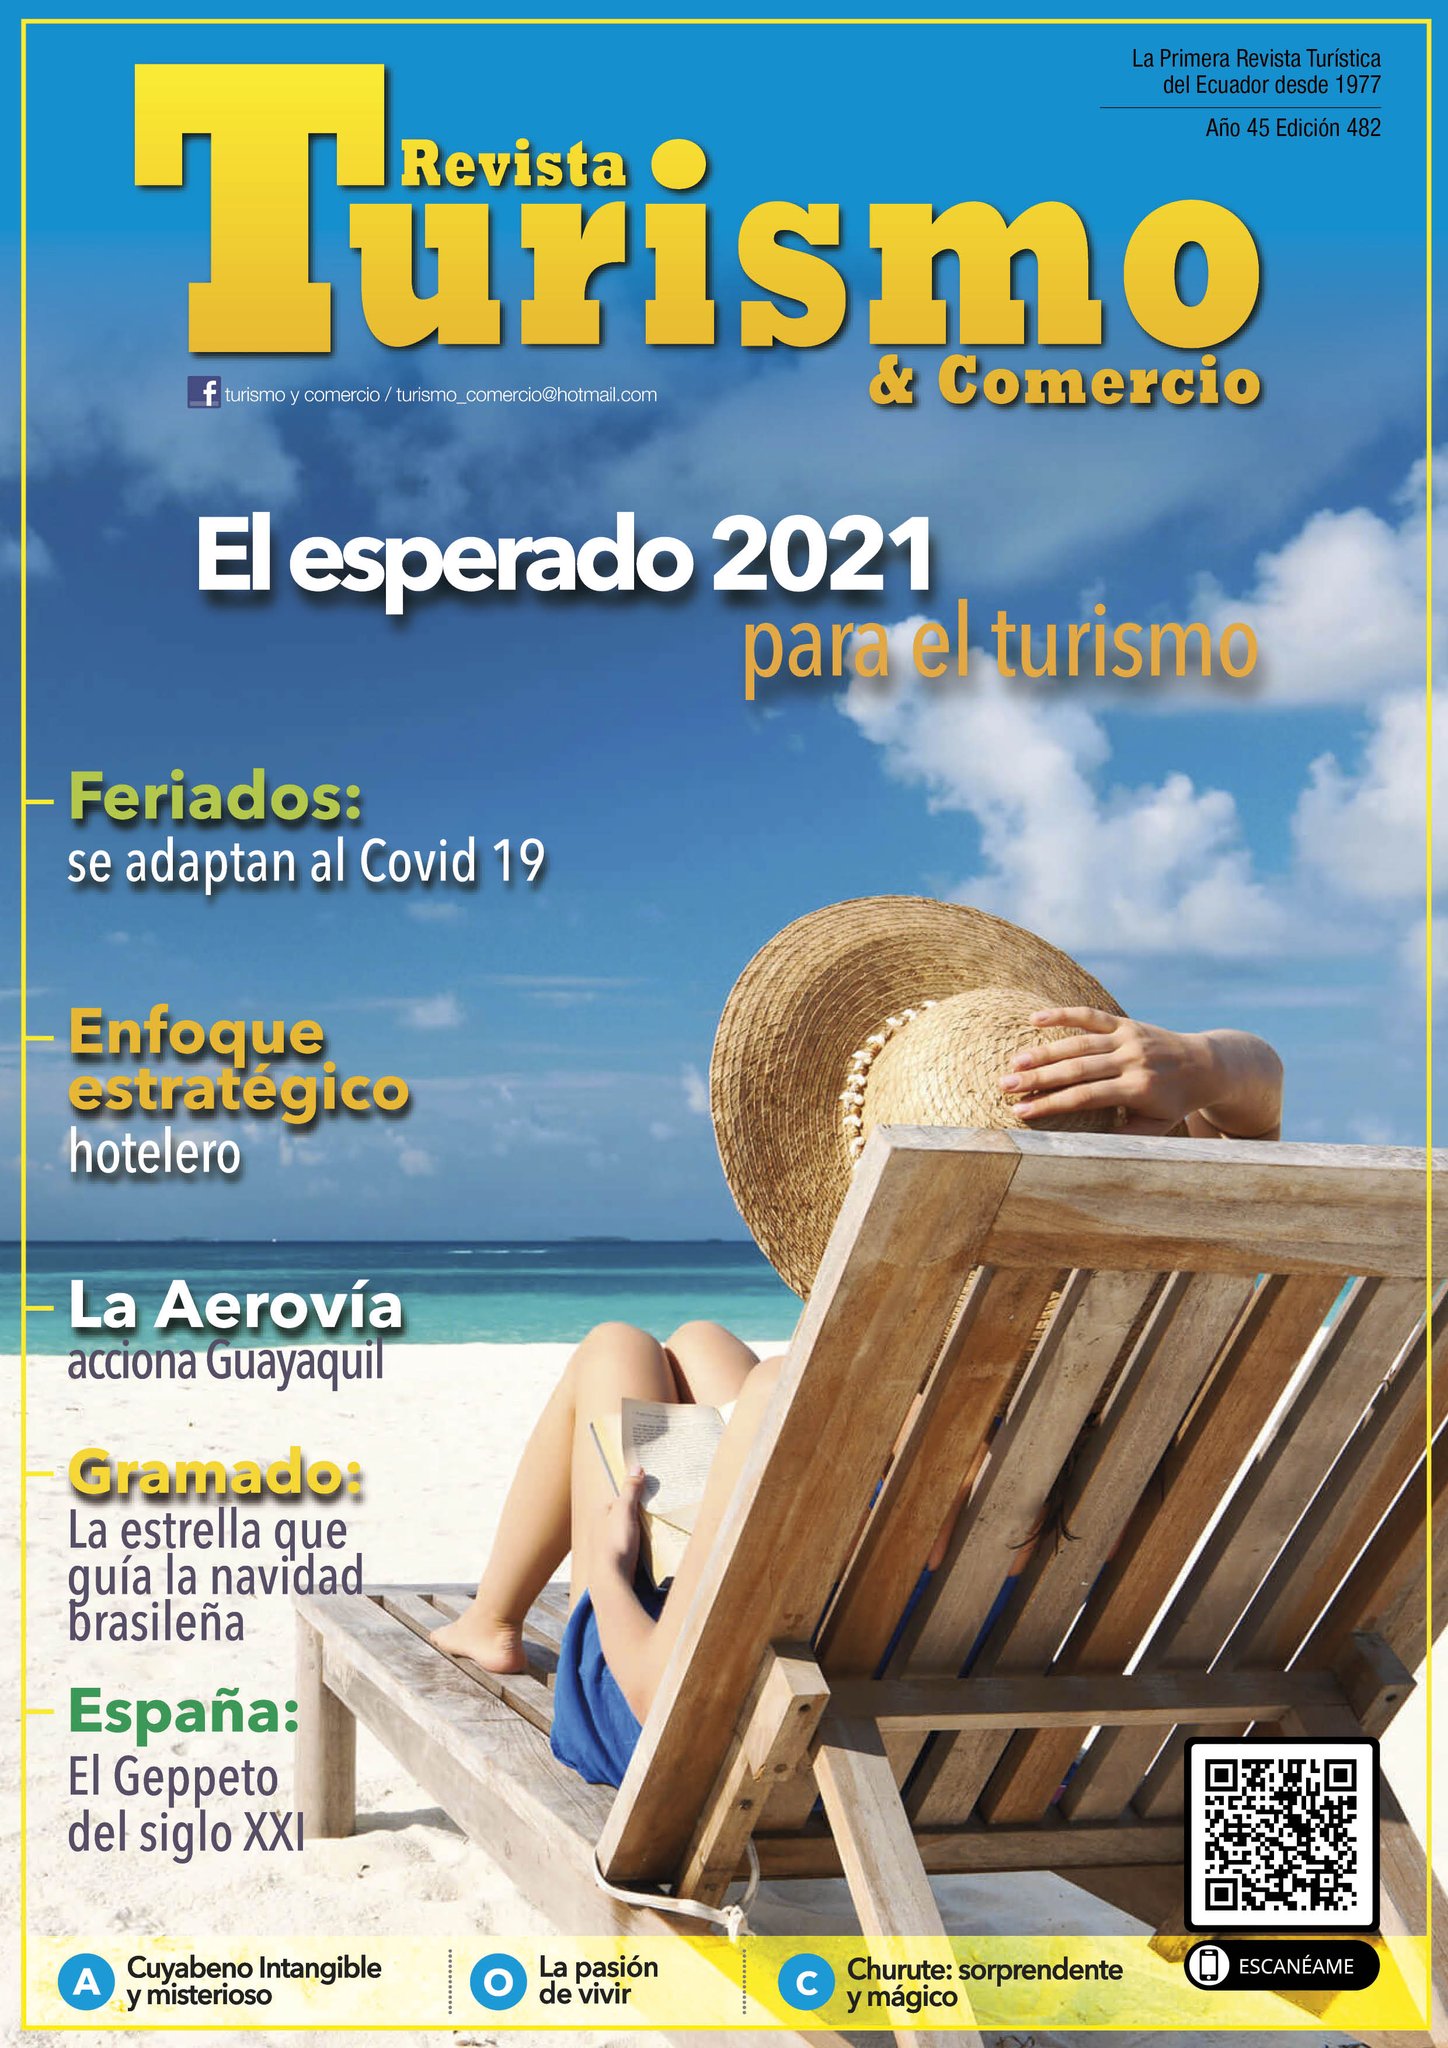 Revista Turismo & Comercio on Twitter: 